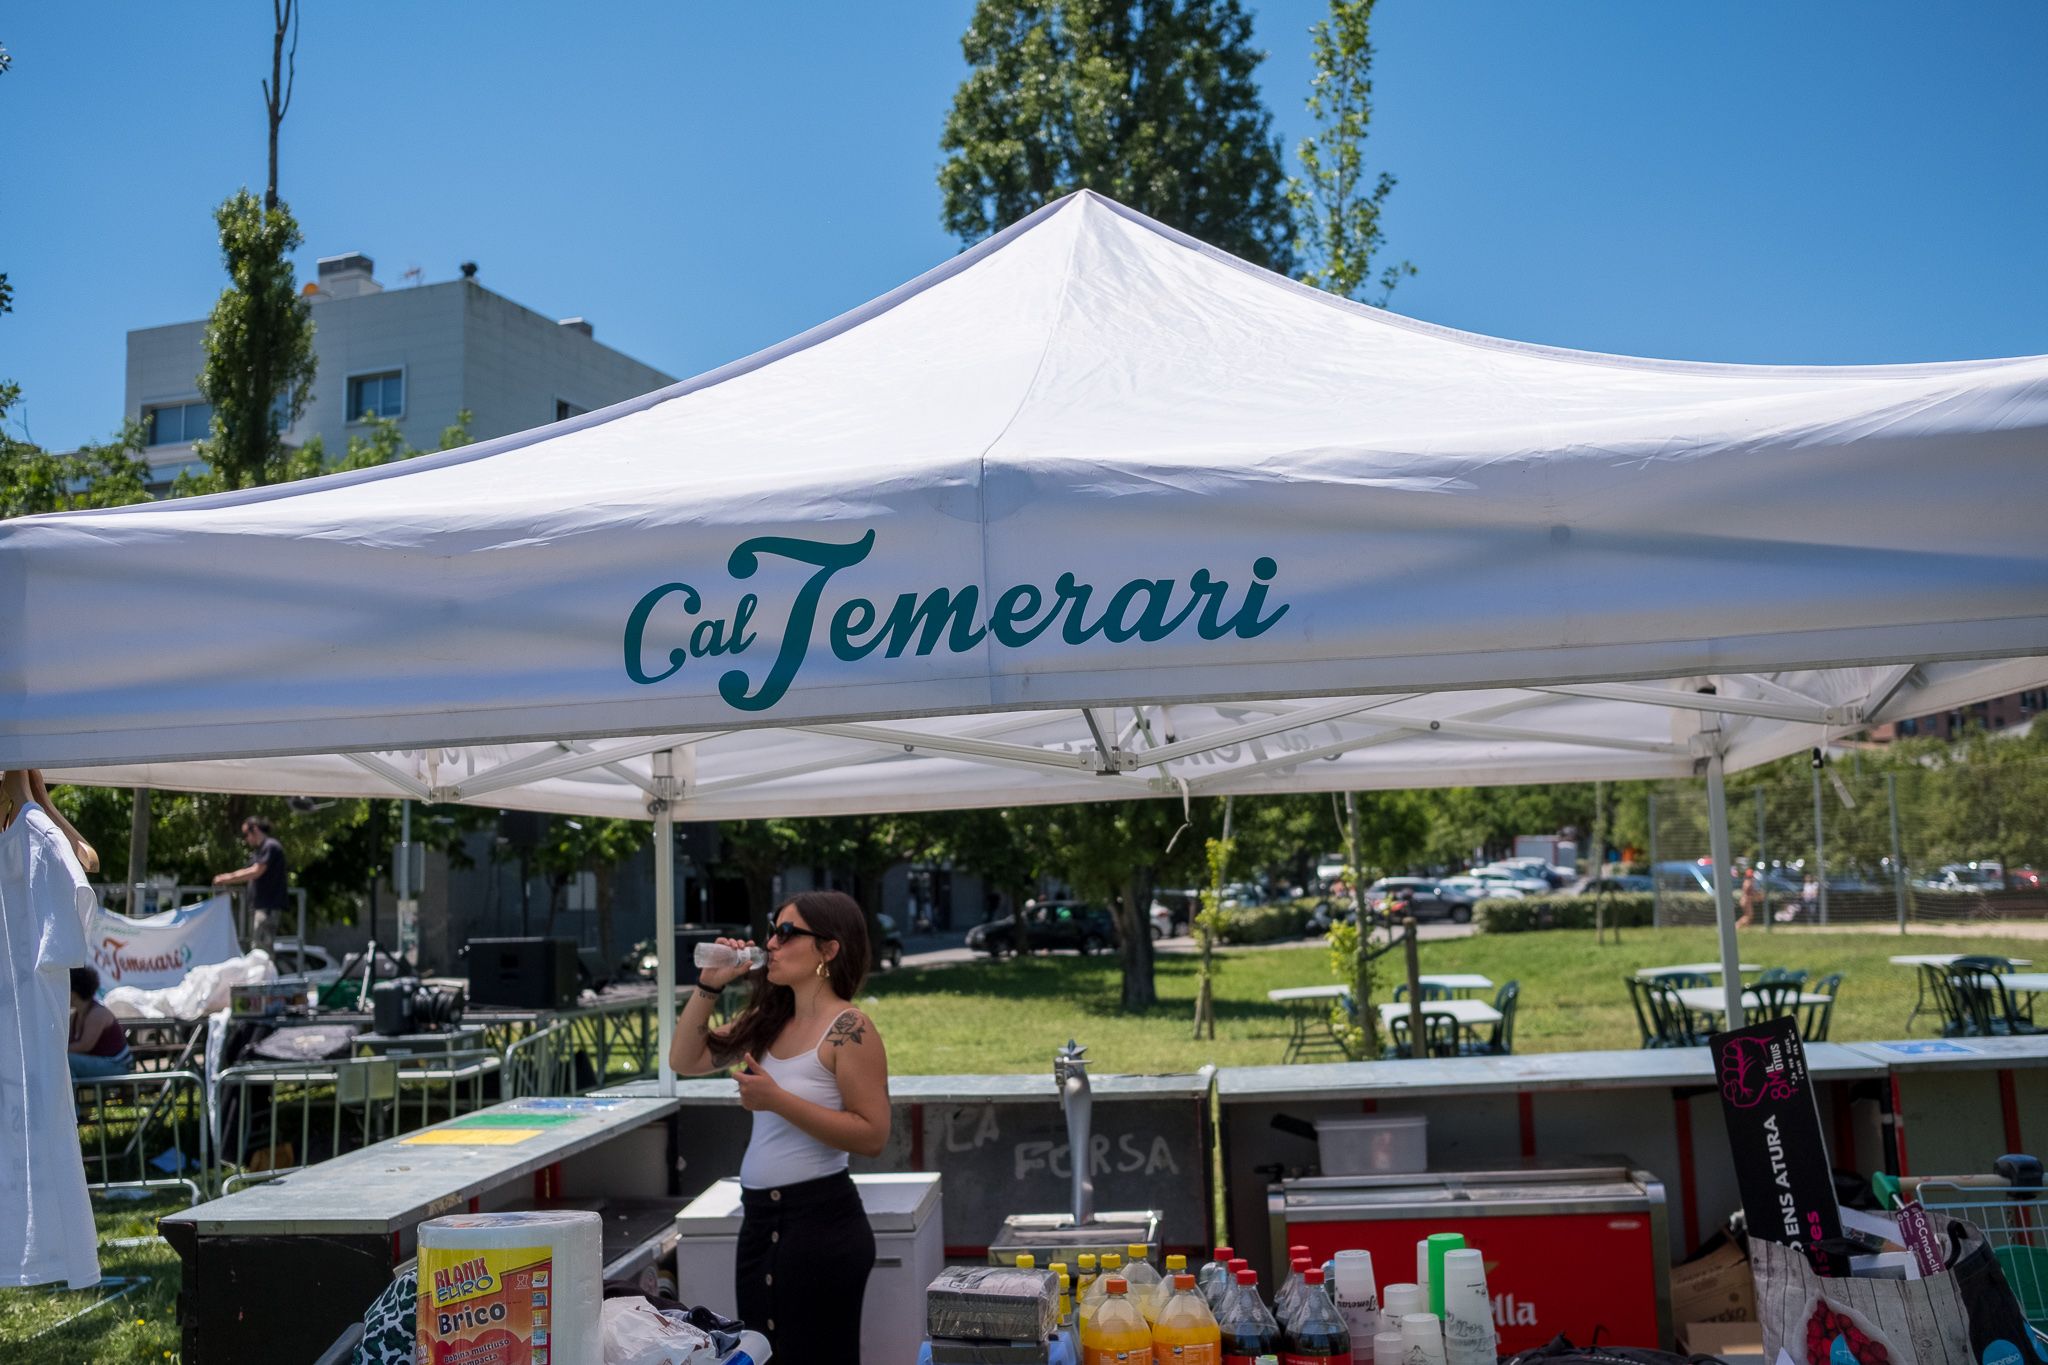 Cal Temerari celebra 4 anys al parc de Can Vernet. FOTO: Ale Gómez